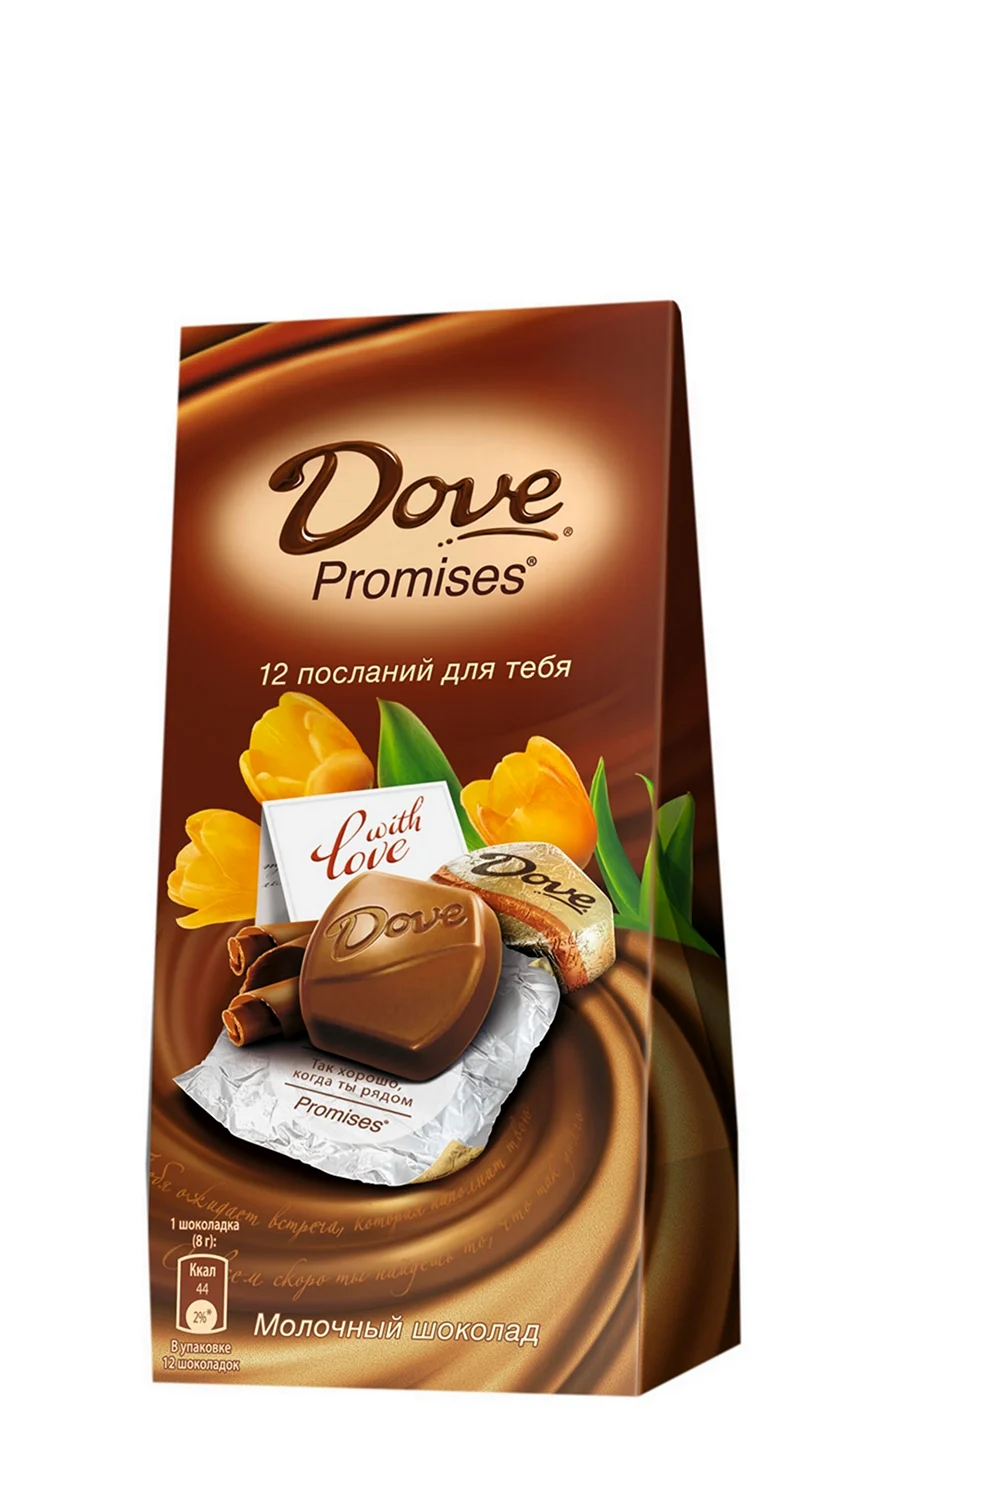 Шоколадные конфеты dove Promises. Картинка